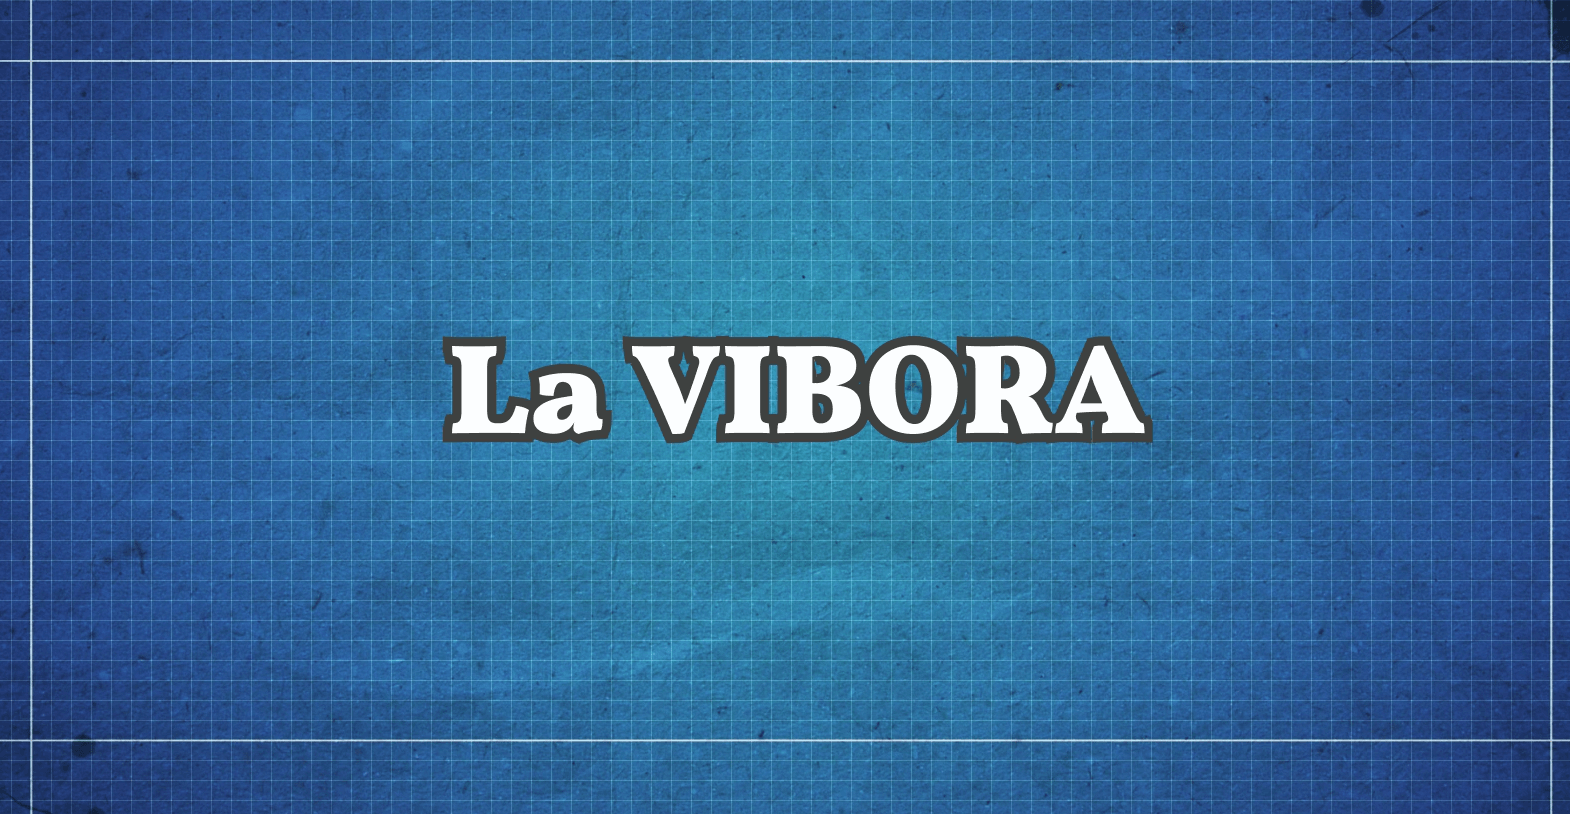 La VIBORA : Een soort technische smash